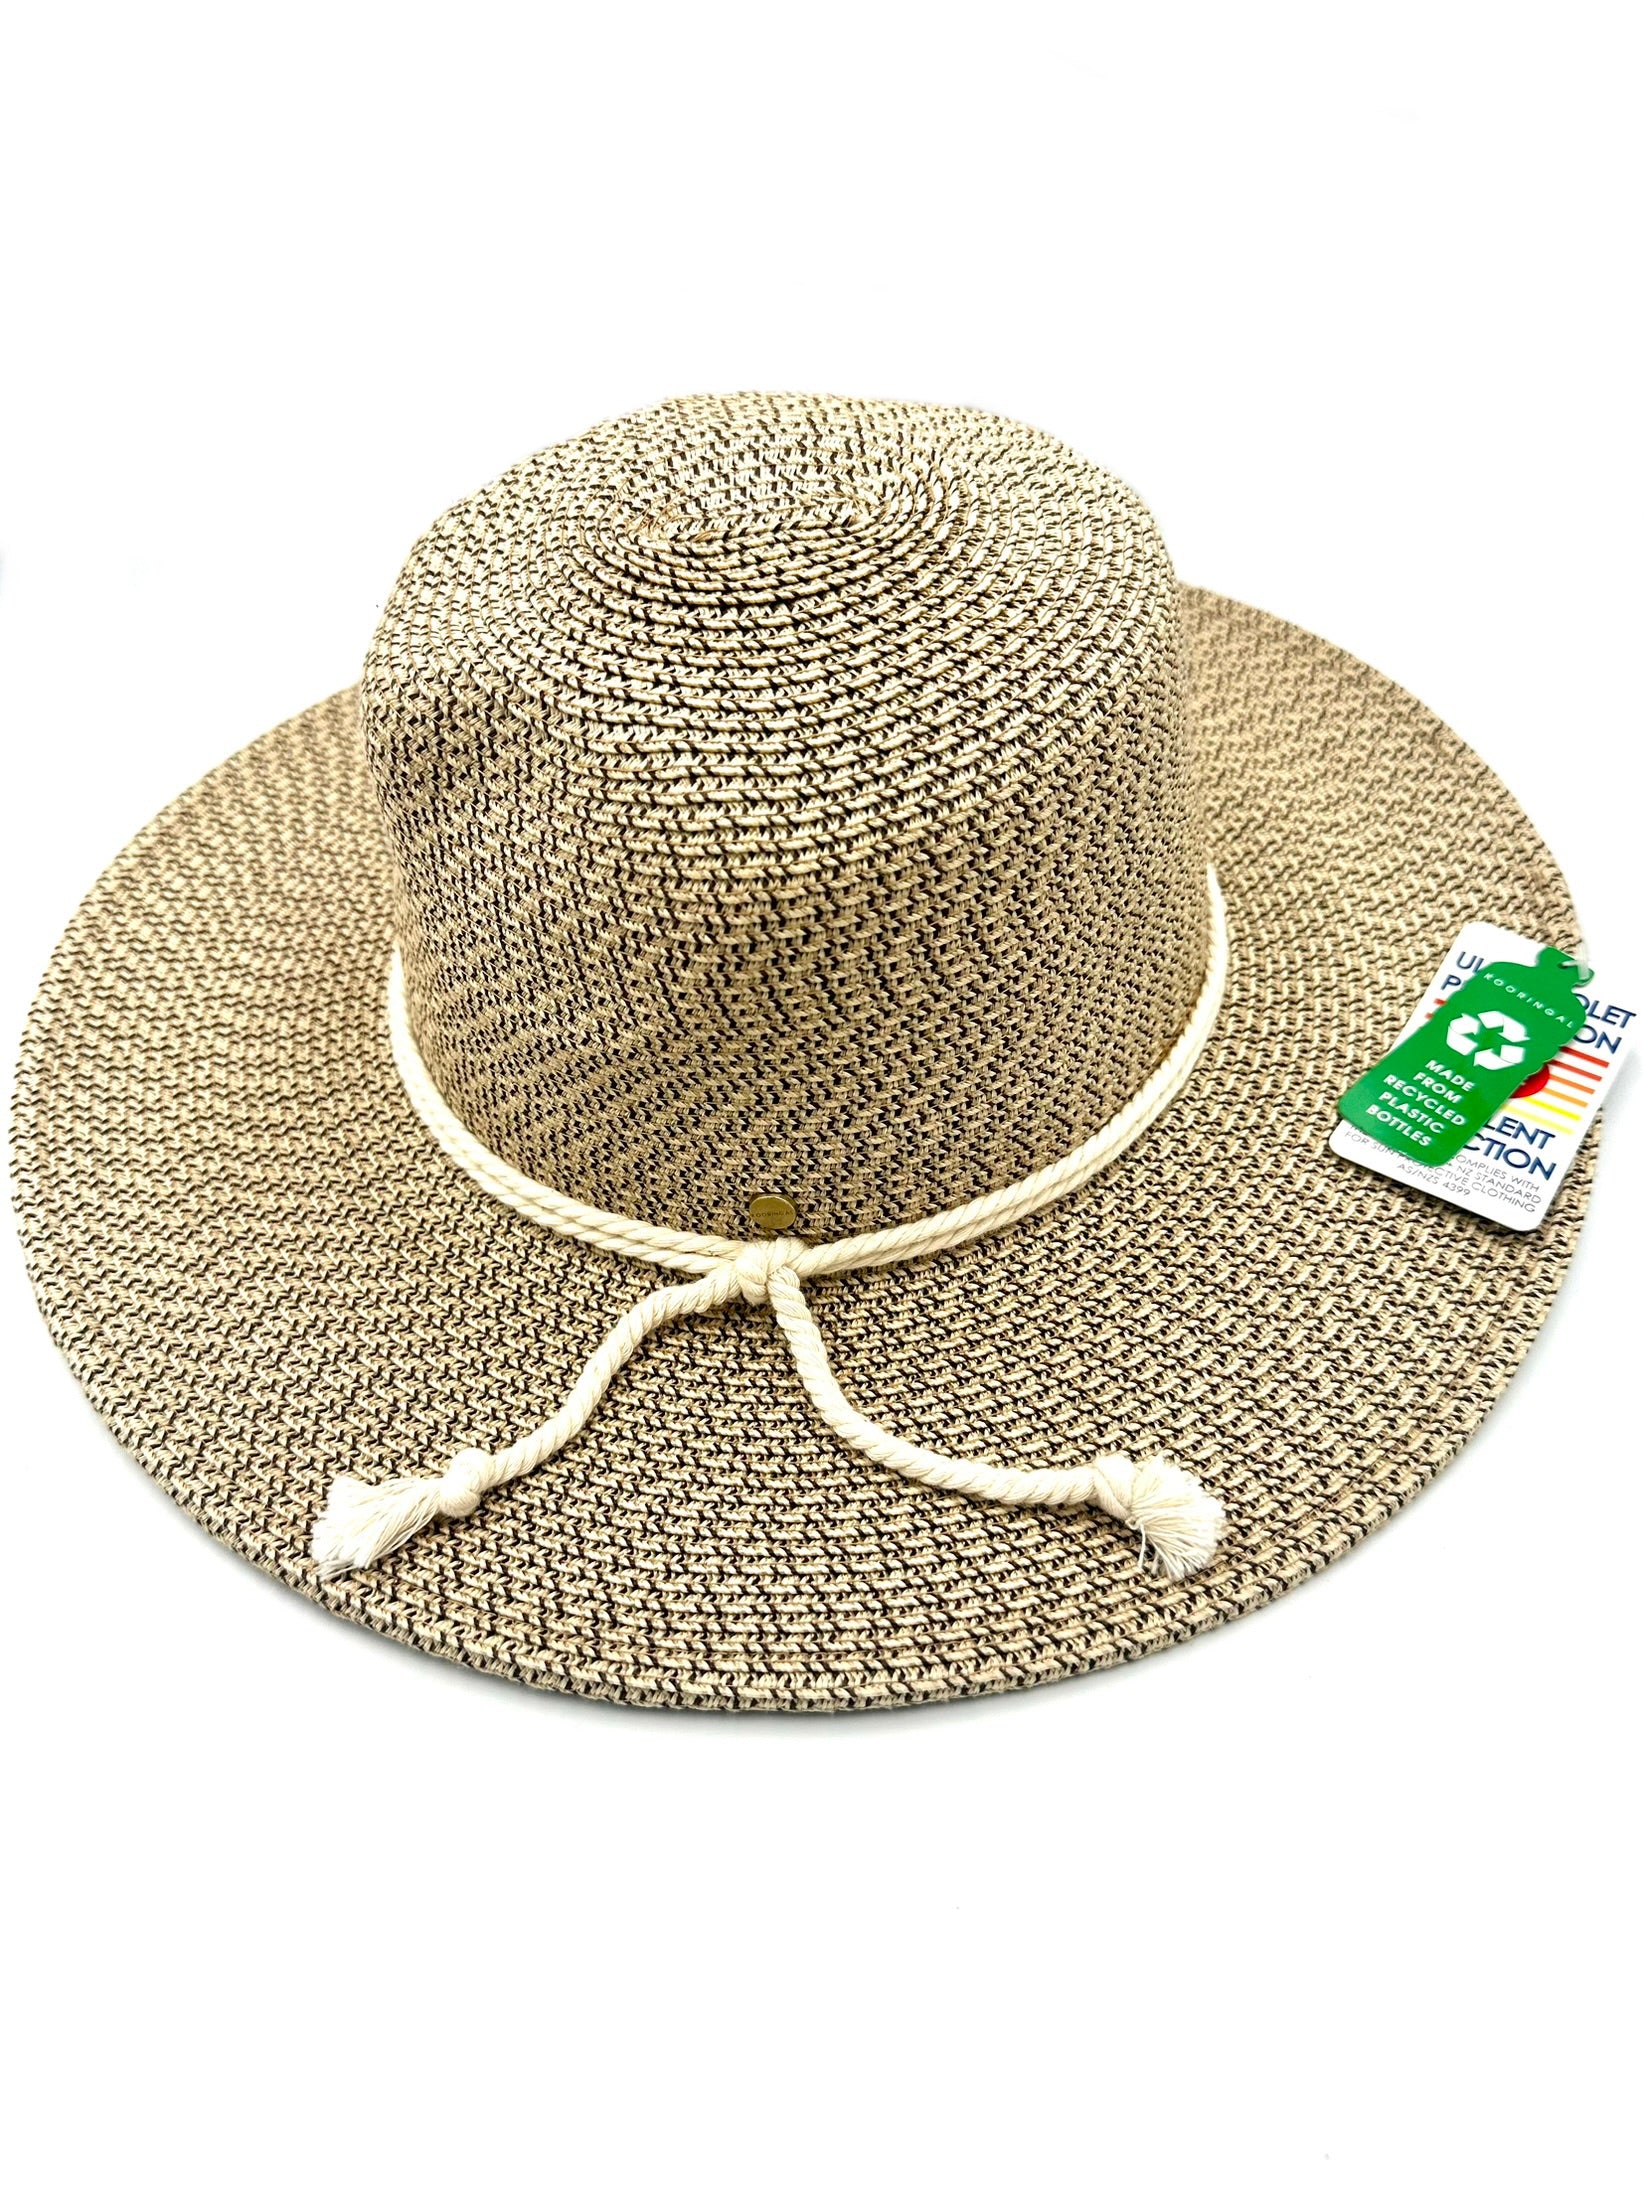 Kooringal - Lakelyn Women's Natural Safari Hat